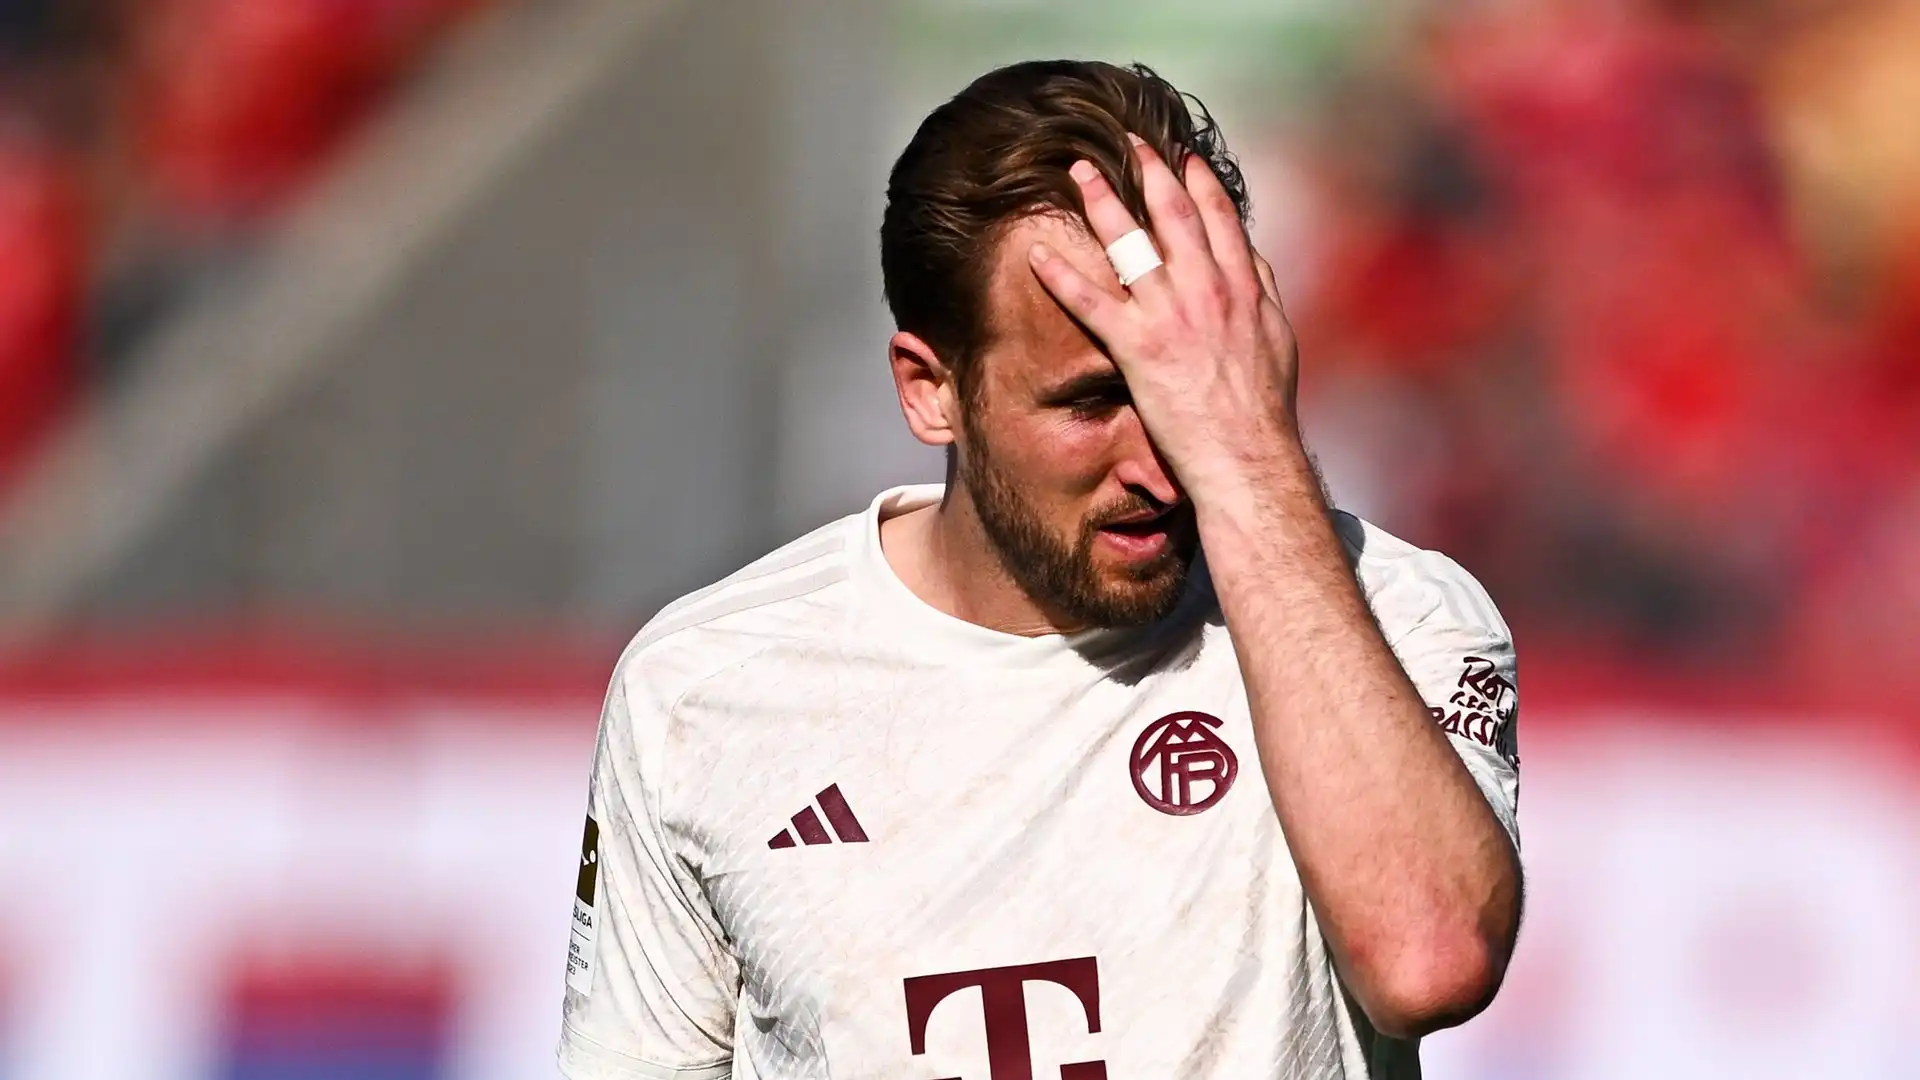 Il Bayern Monaco ha subito un'umiliante sconfitta contro l'Heidenheim nella 28esima giornata di campionato